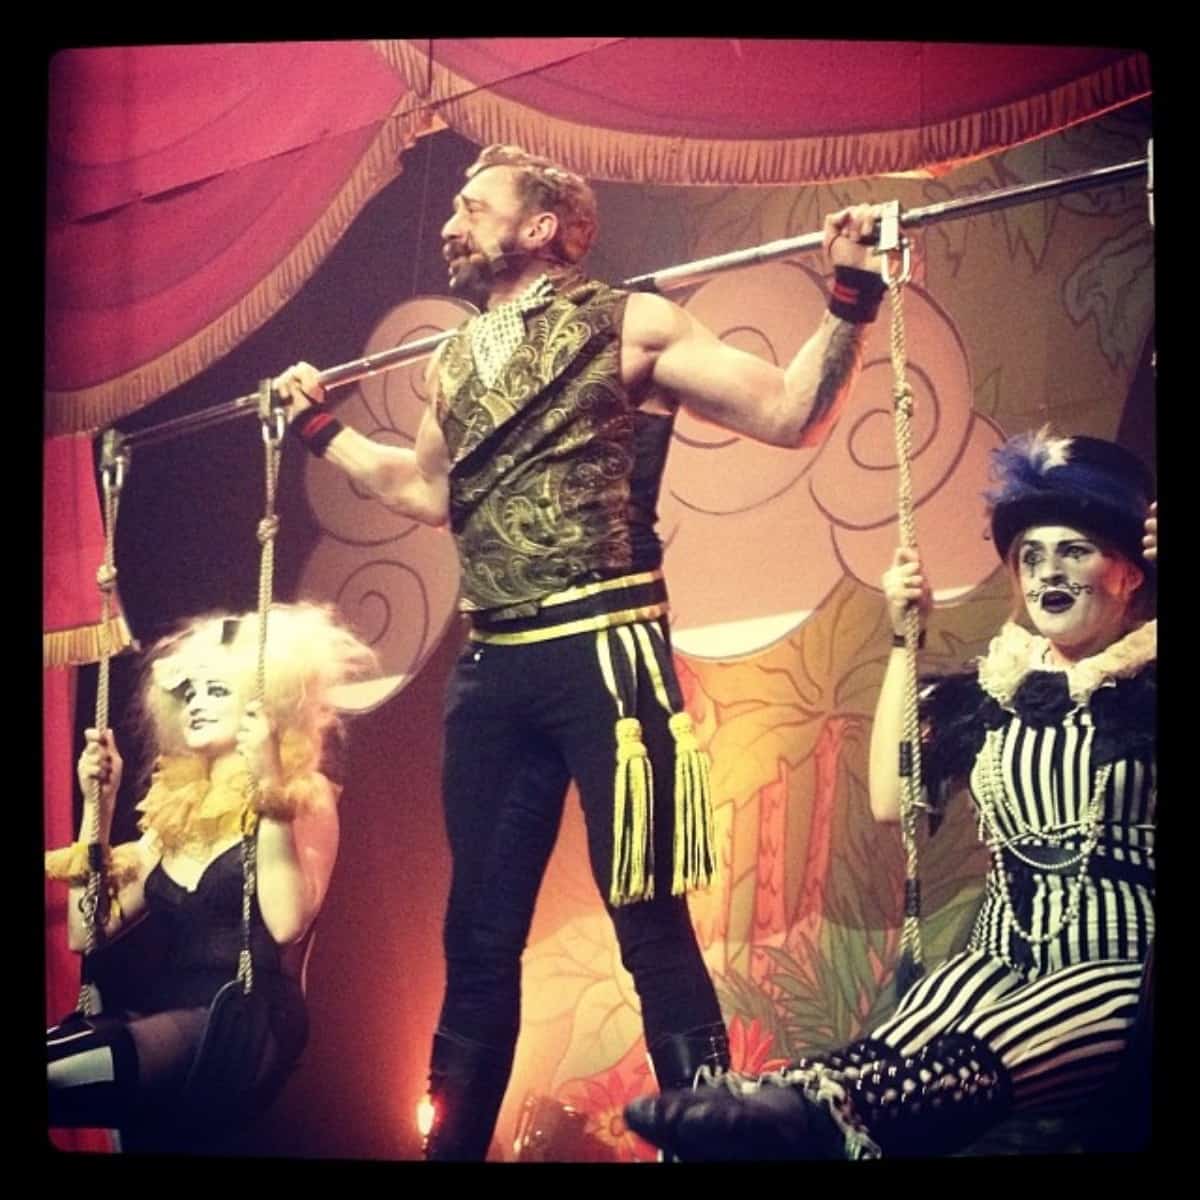 Circus act